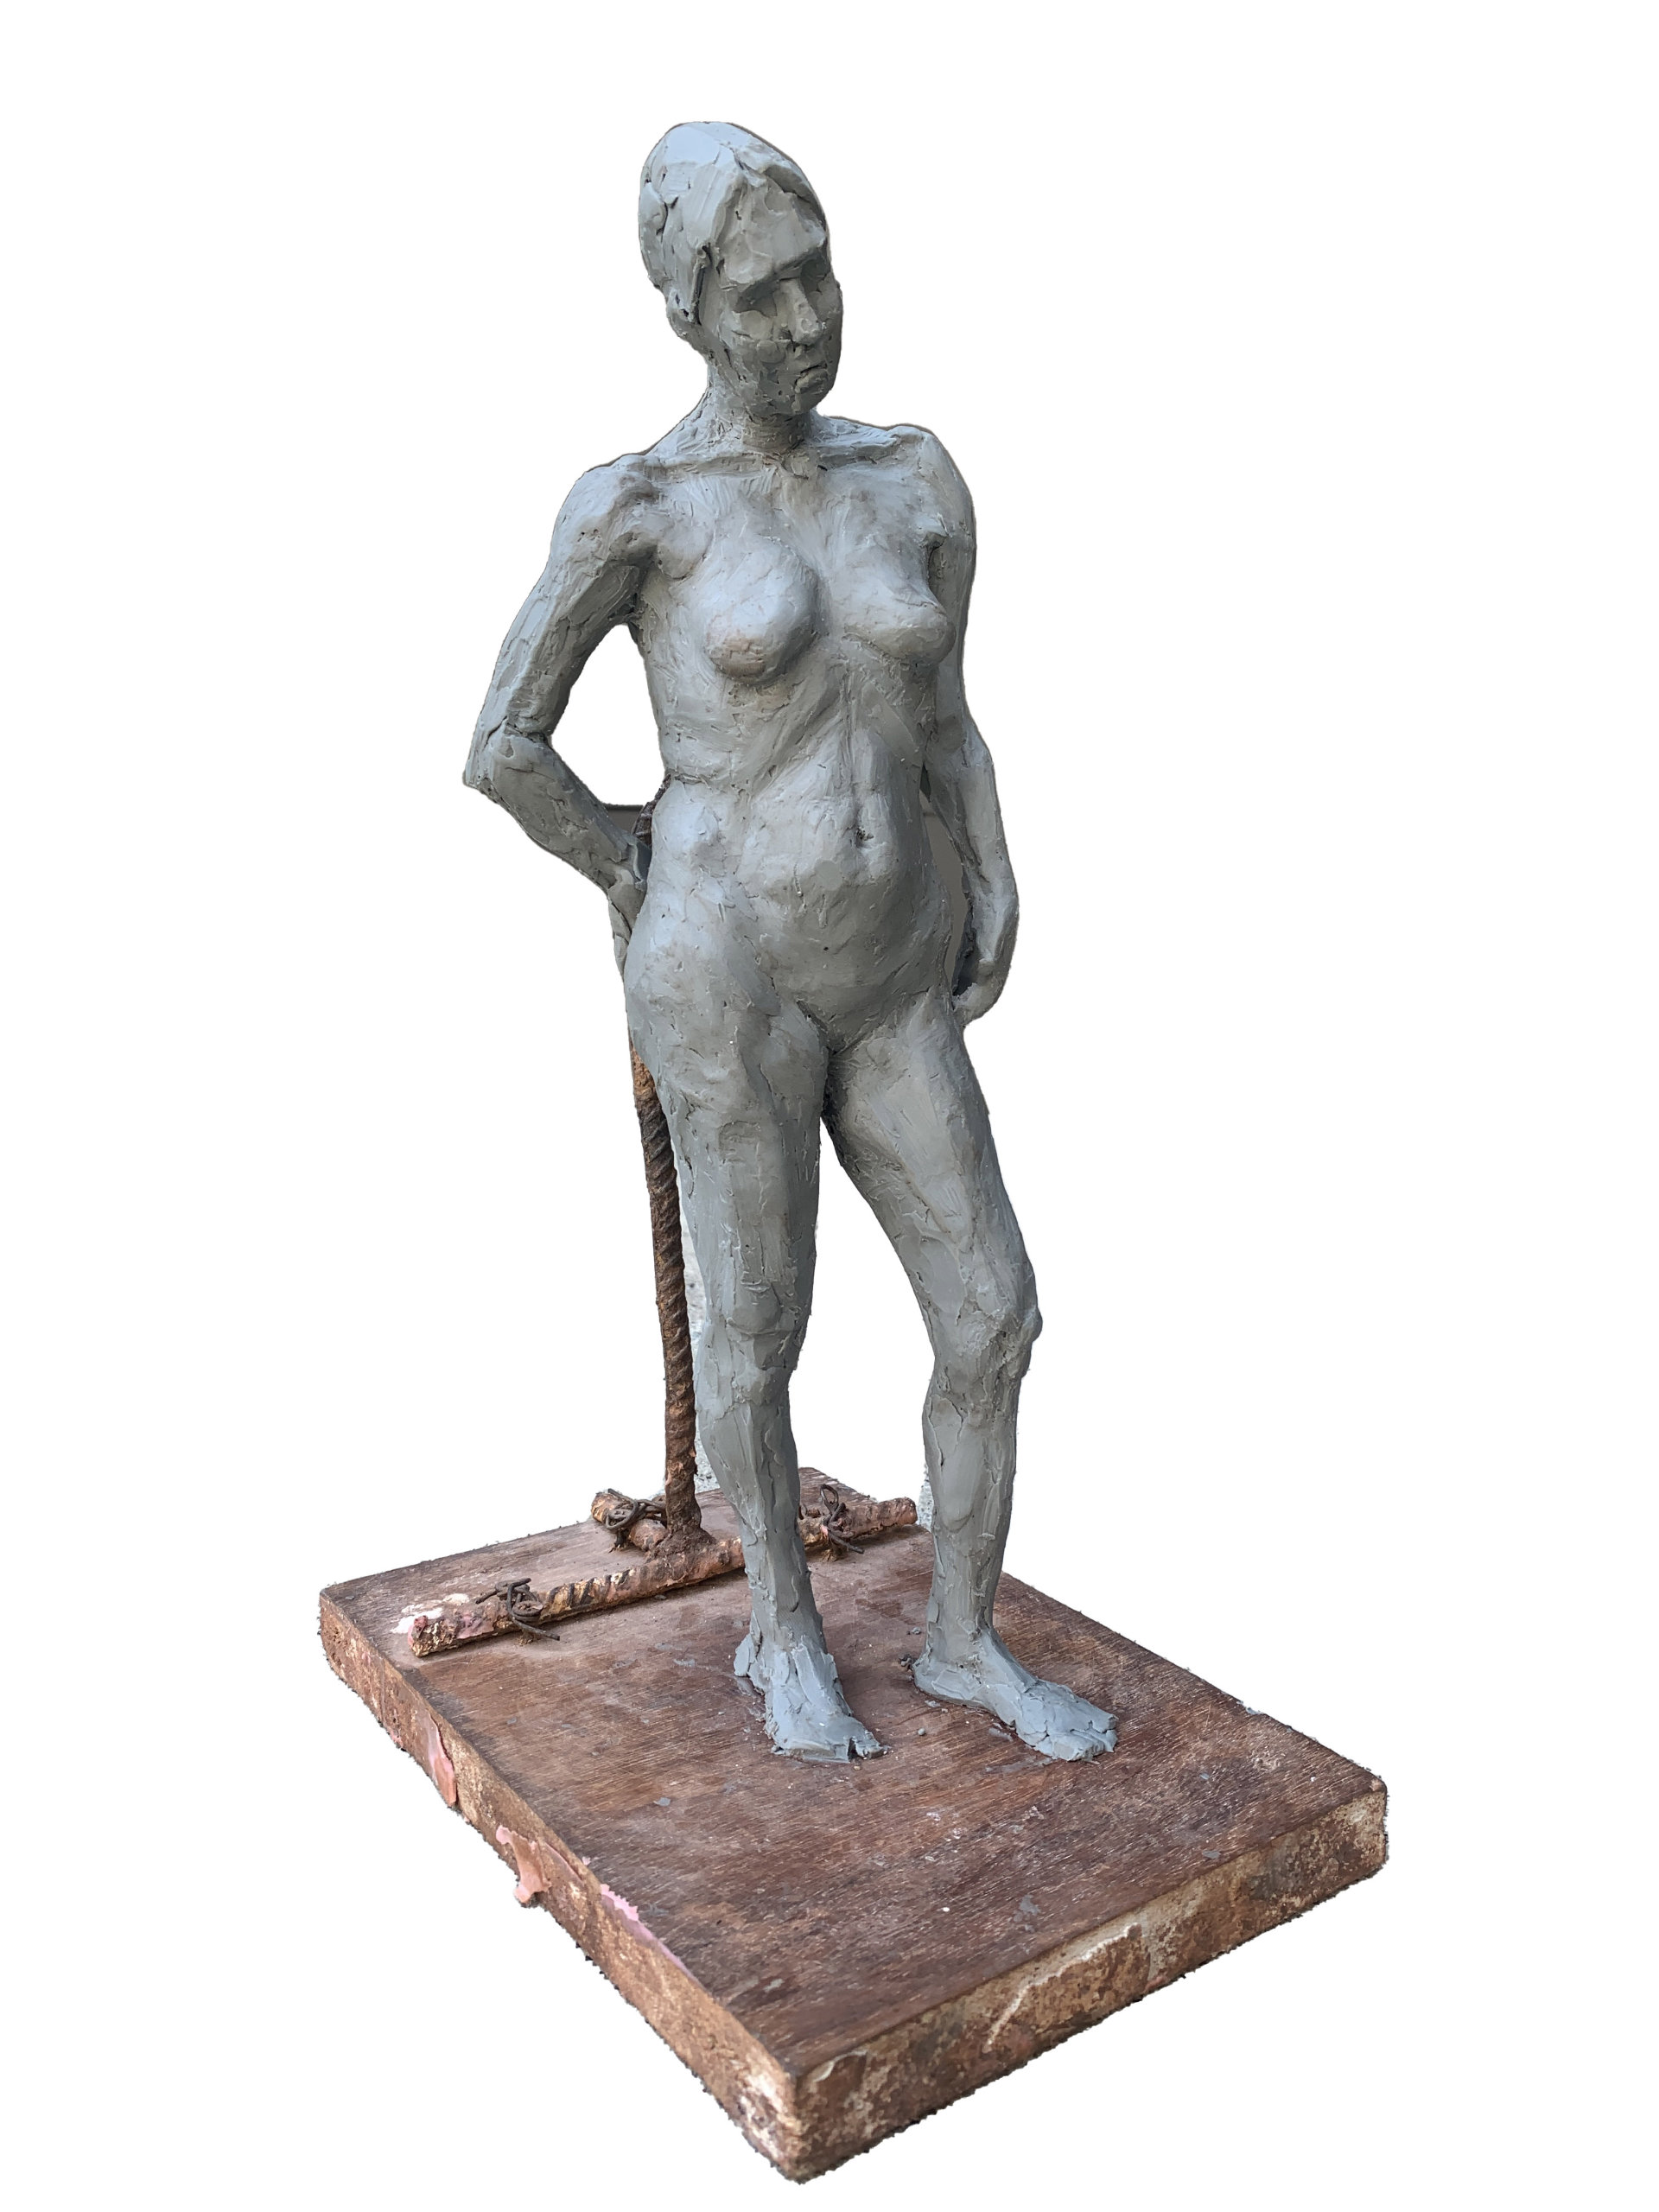 Studium kobiecego aktu wykonane z szarej plasteliny w klasycznej dla rzeźbypozie nazywanej kontrapostem